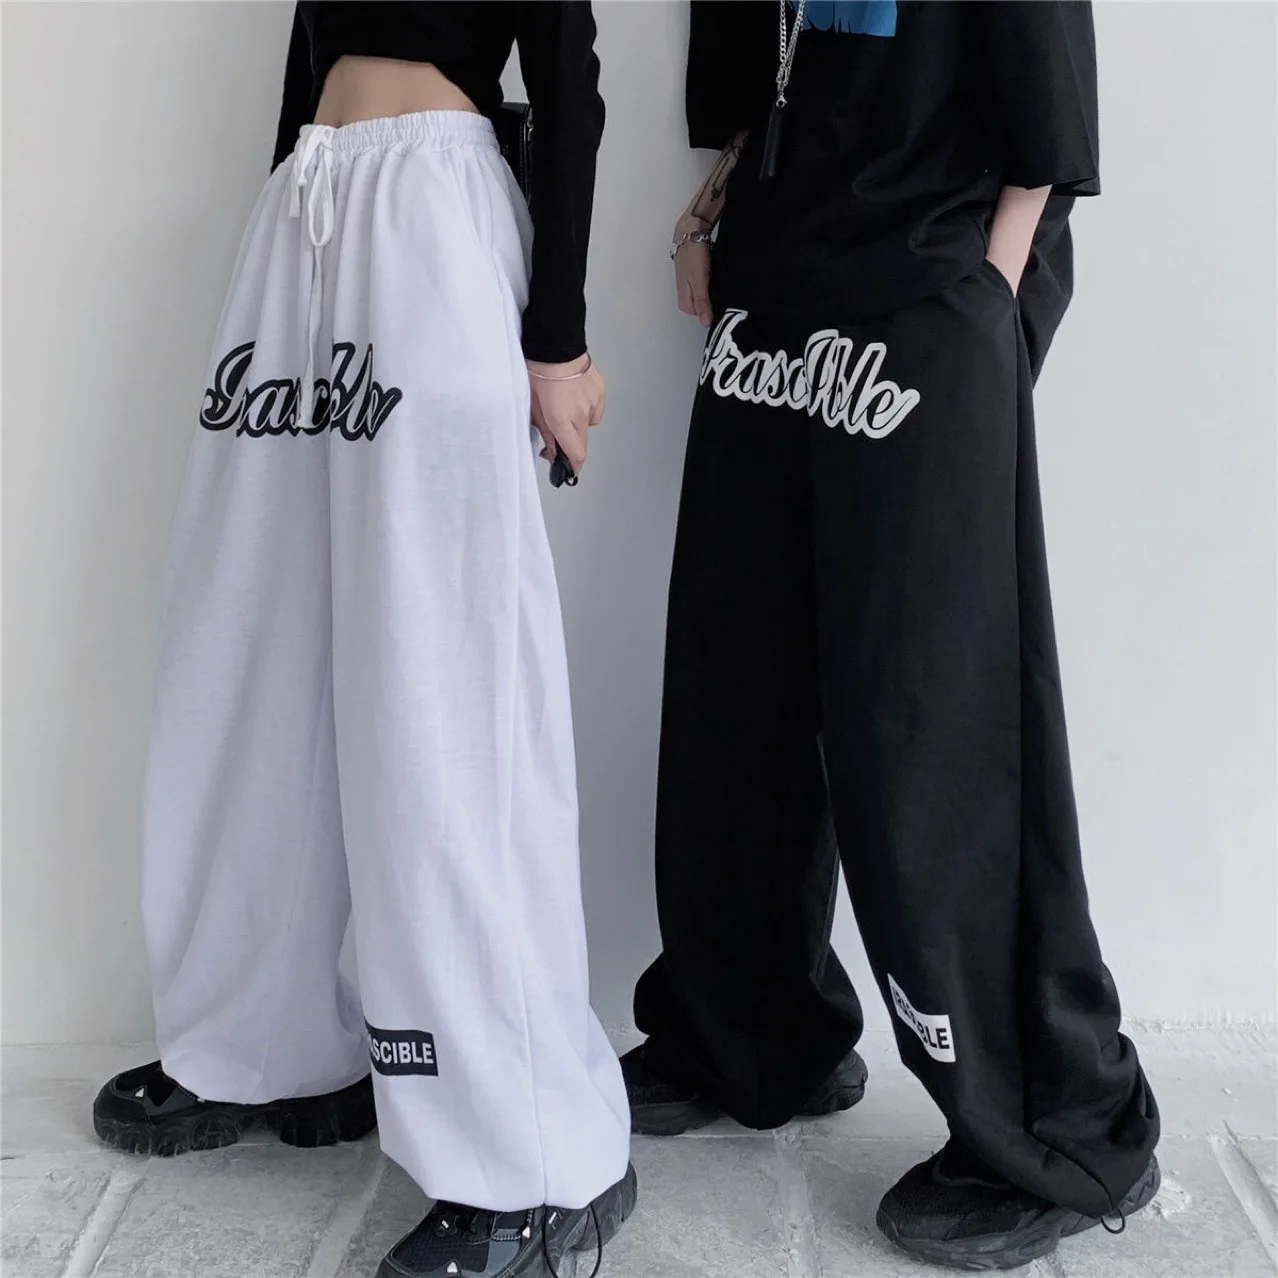 

Брюки унисекс свободного покроя с карманами, повседневные стильные штаны с принтом в виде букв, с эластичным поясом, черные, белые, S/ M/ L/ XL/ XXL